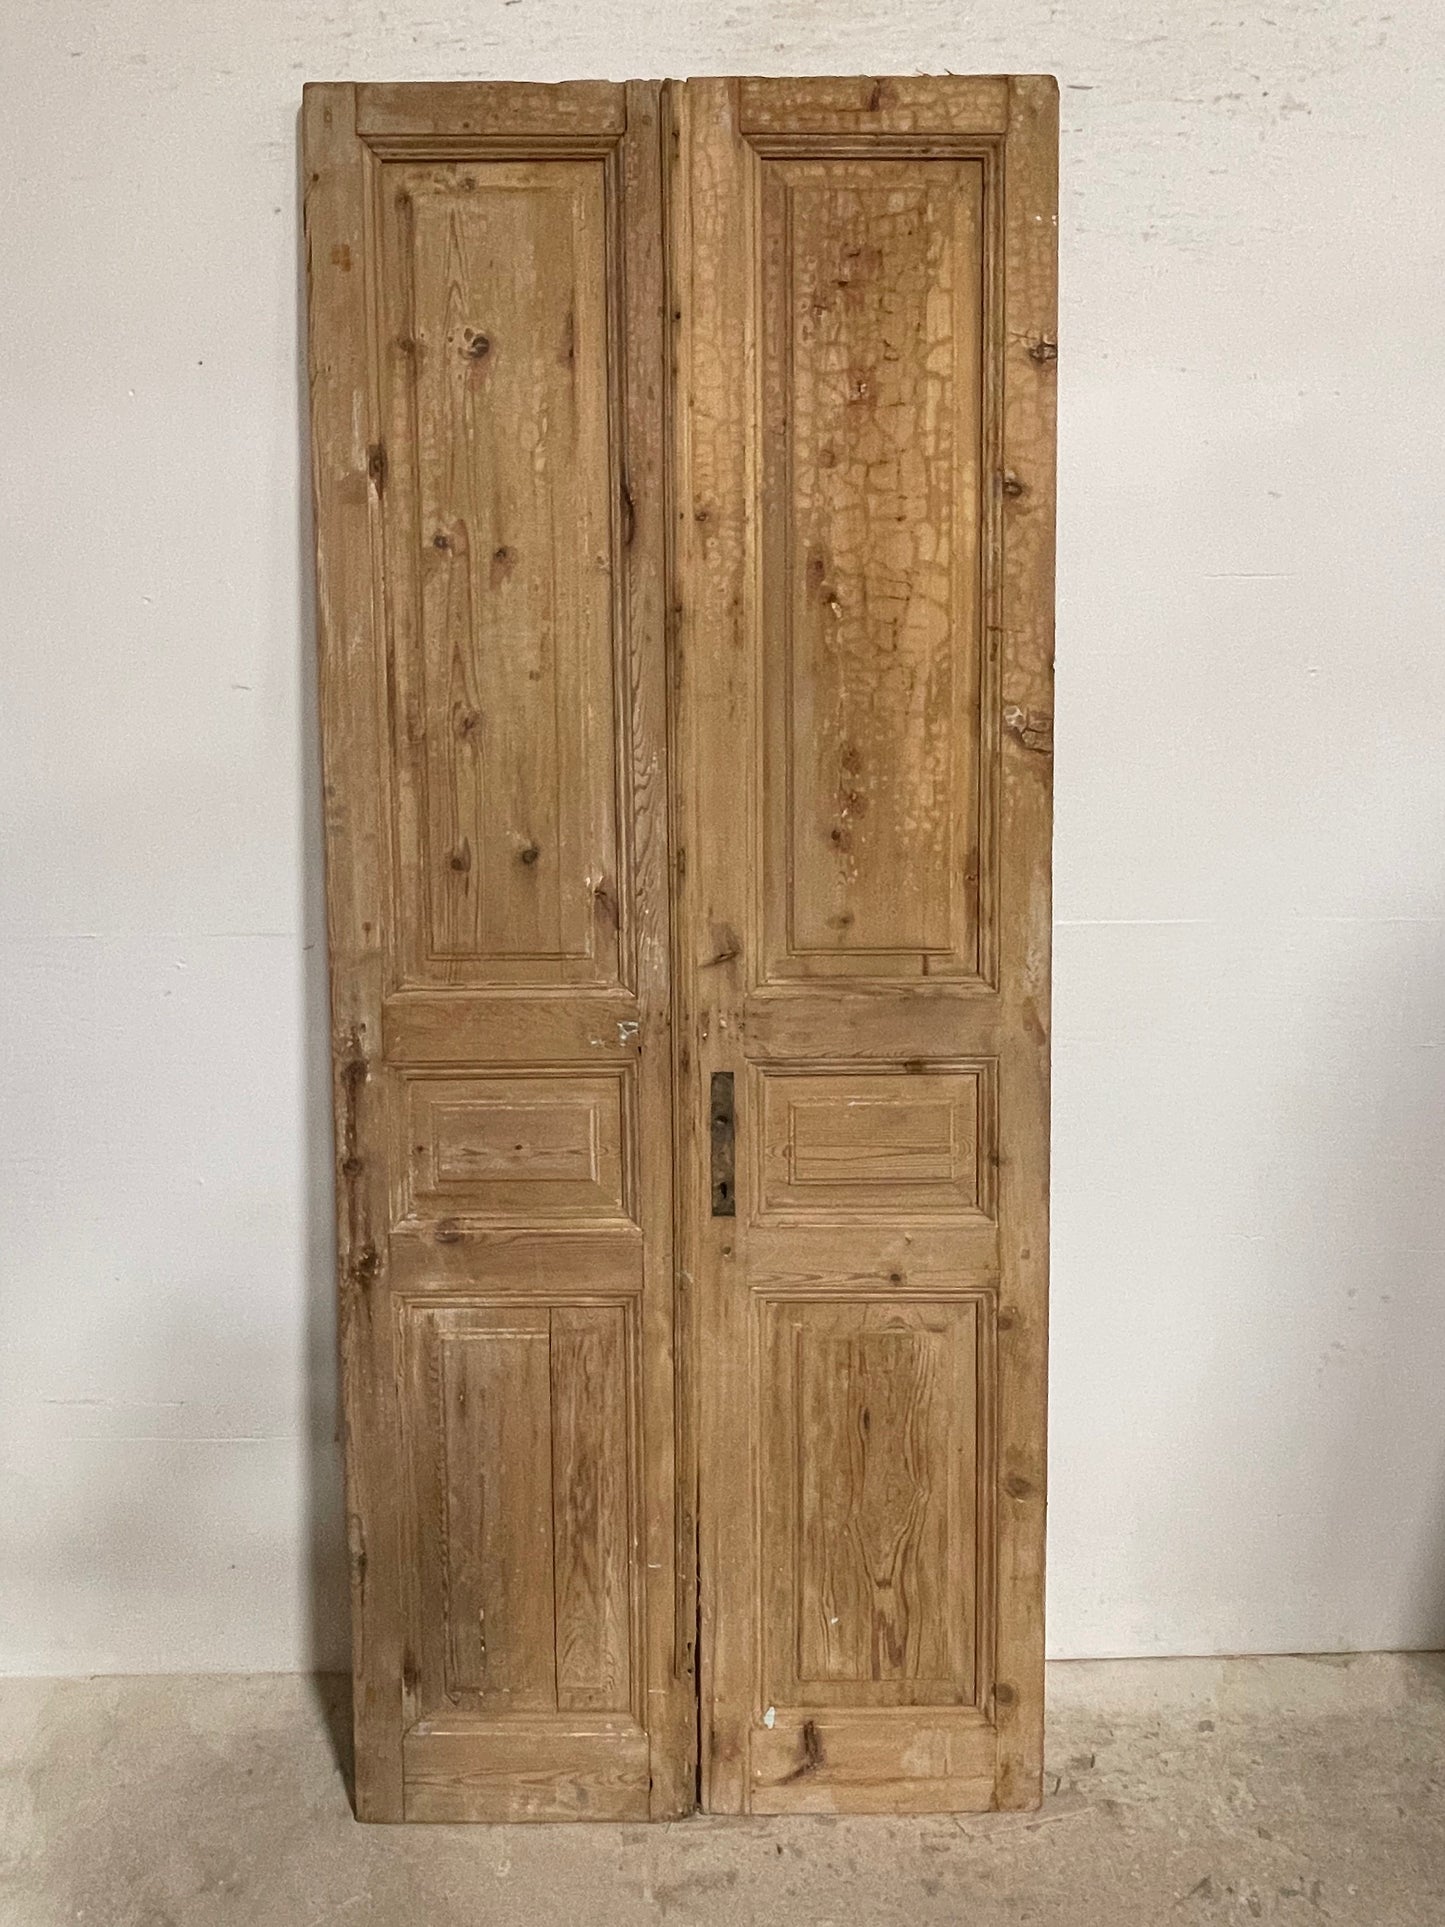 Antique French panel doors (92x38) I109s